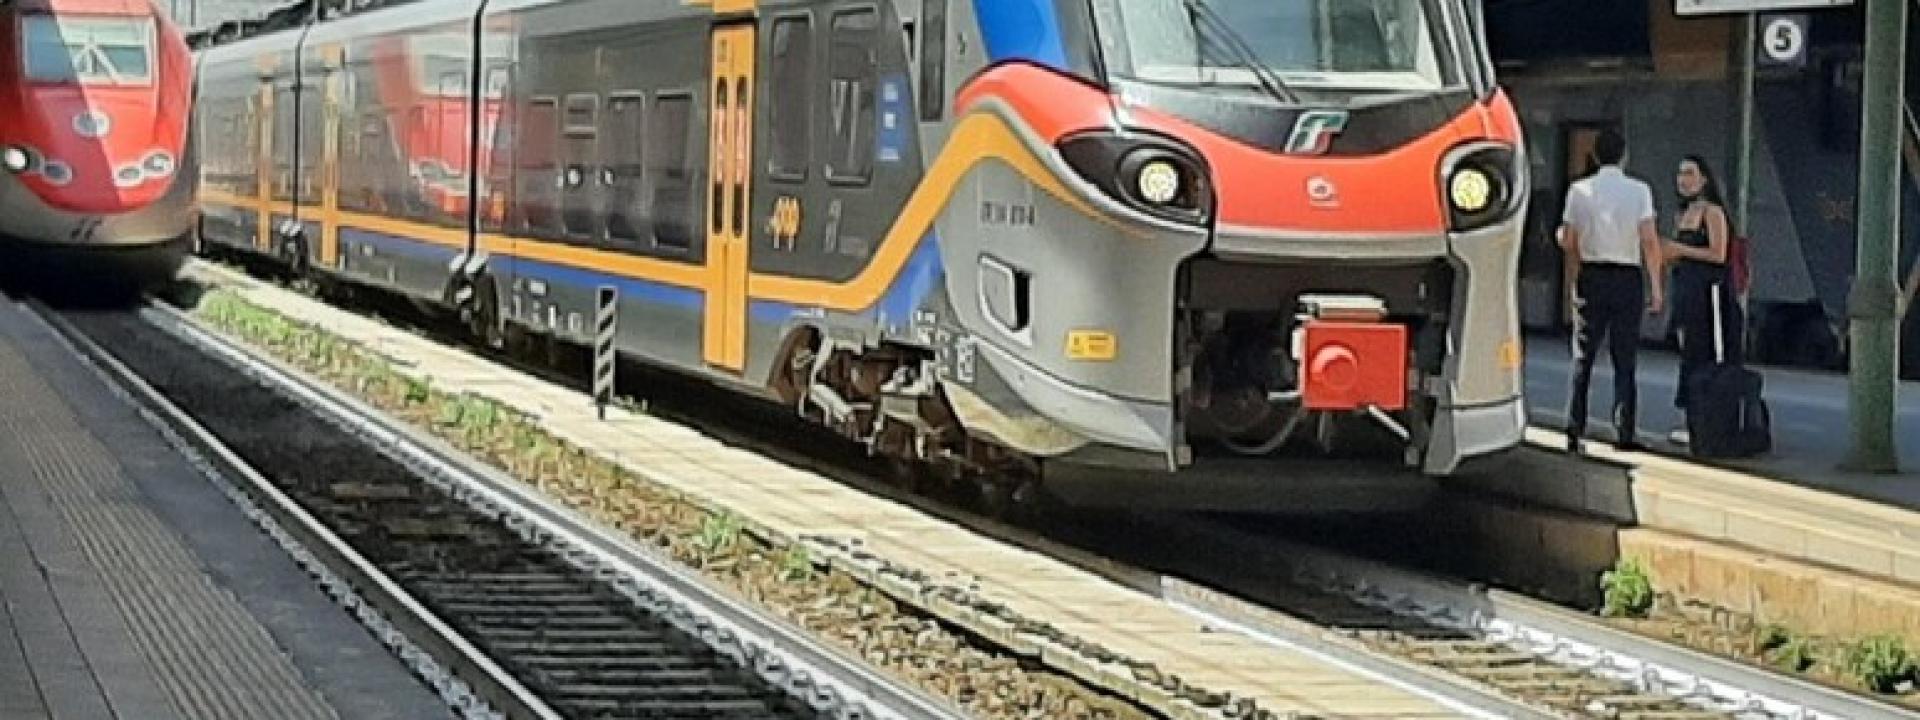 Marche - Stazioni del Territorio: interventi delle Ferrovie a Sforzacosta, Matelica e Loreto